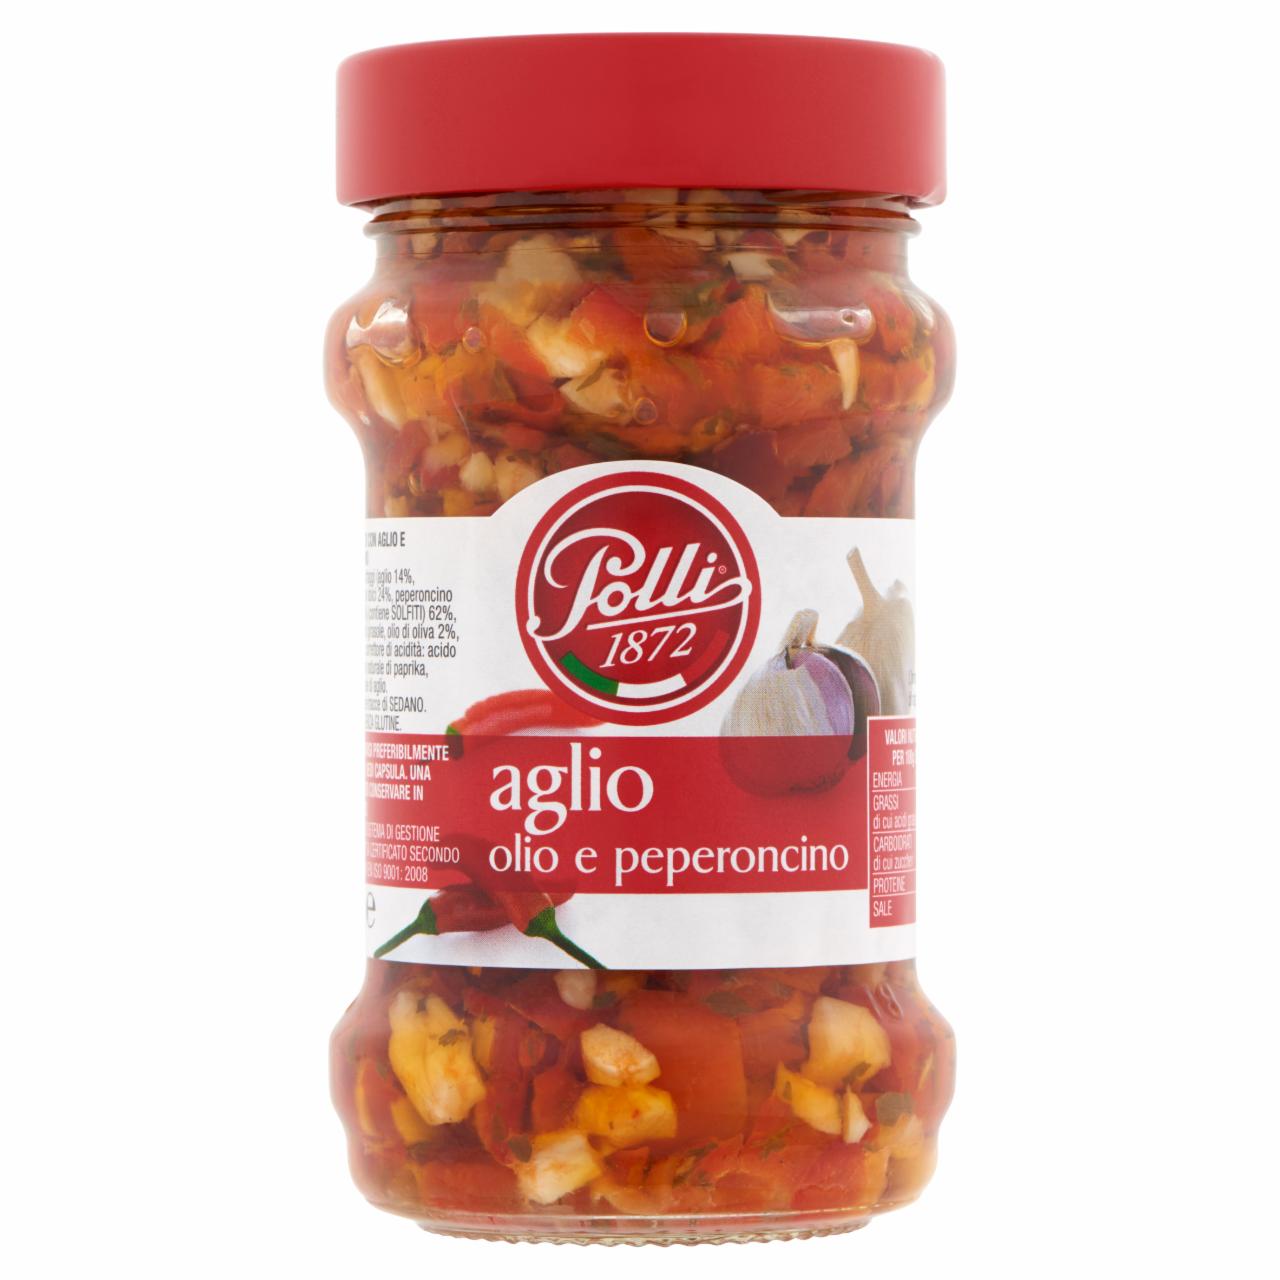 Képek - Polli darált fokhagyma és csípős chili paprika növényi olajban 185 g